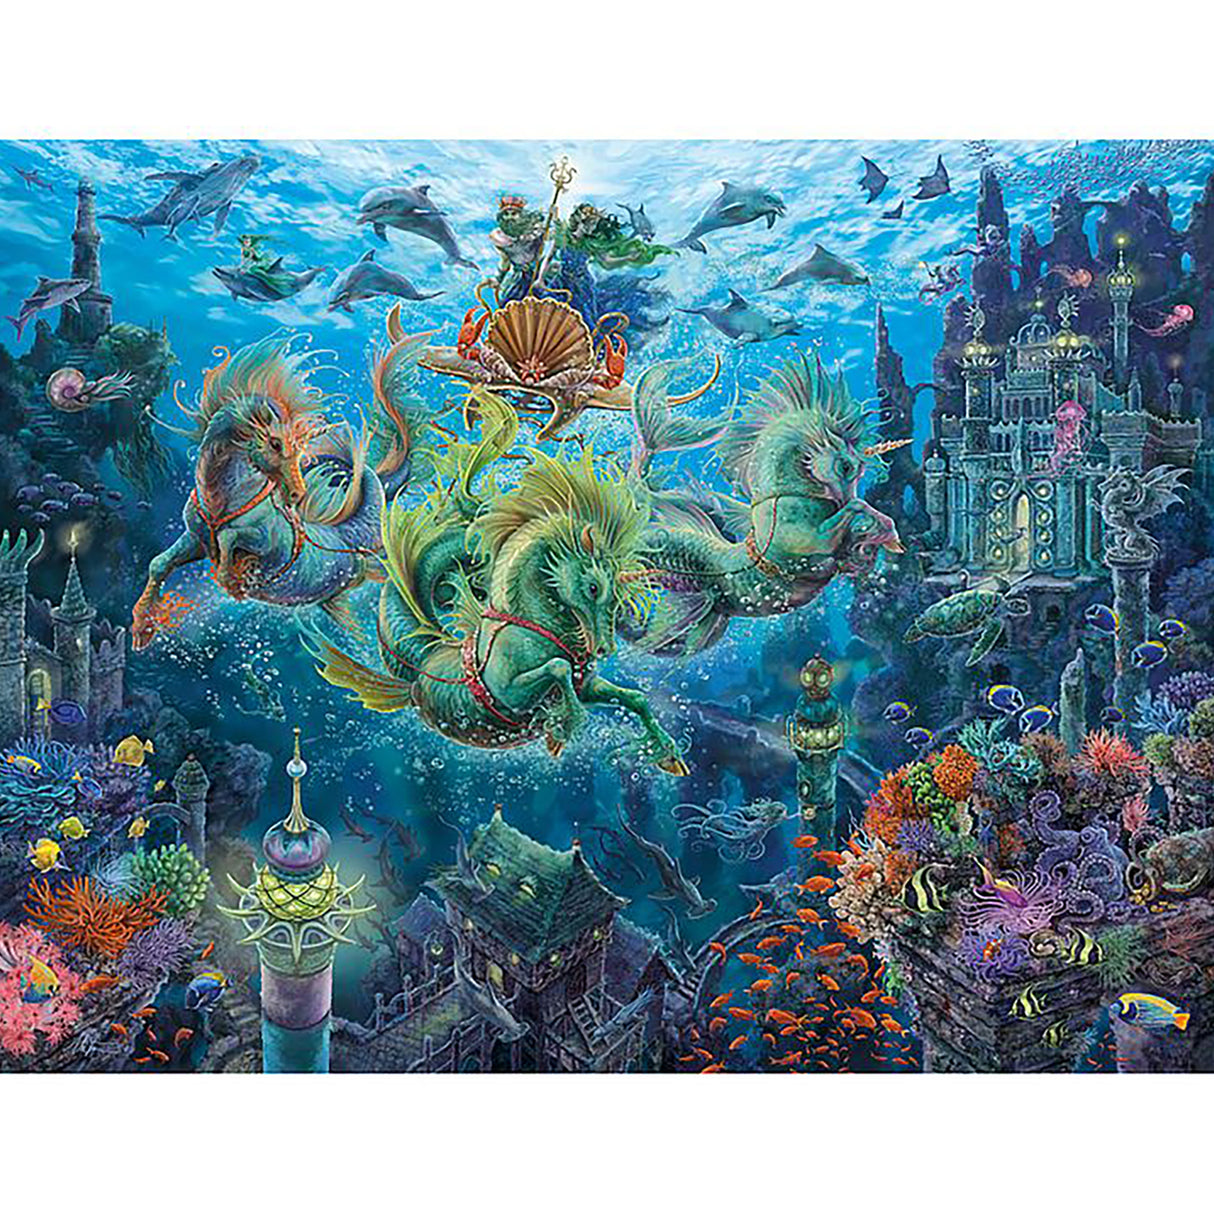 Ravensburger Underwater Magic Puzzle (2000 pieces)